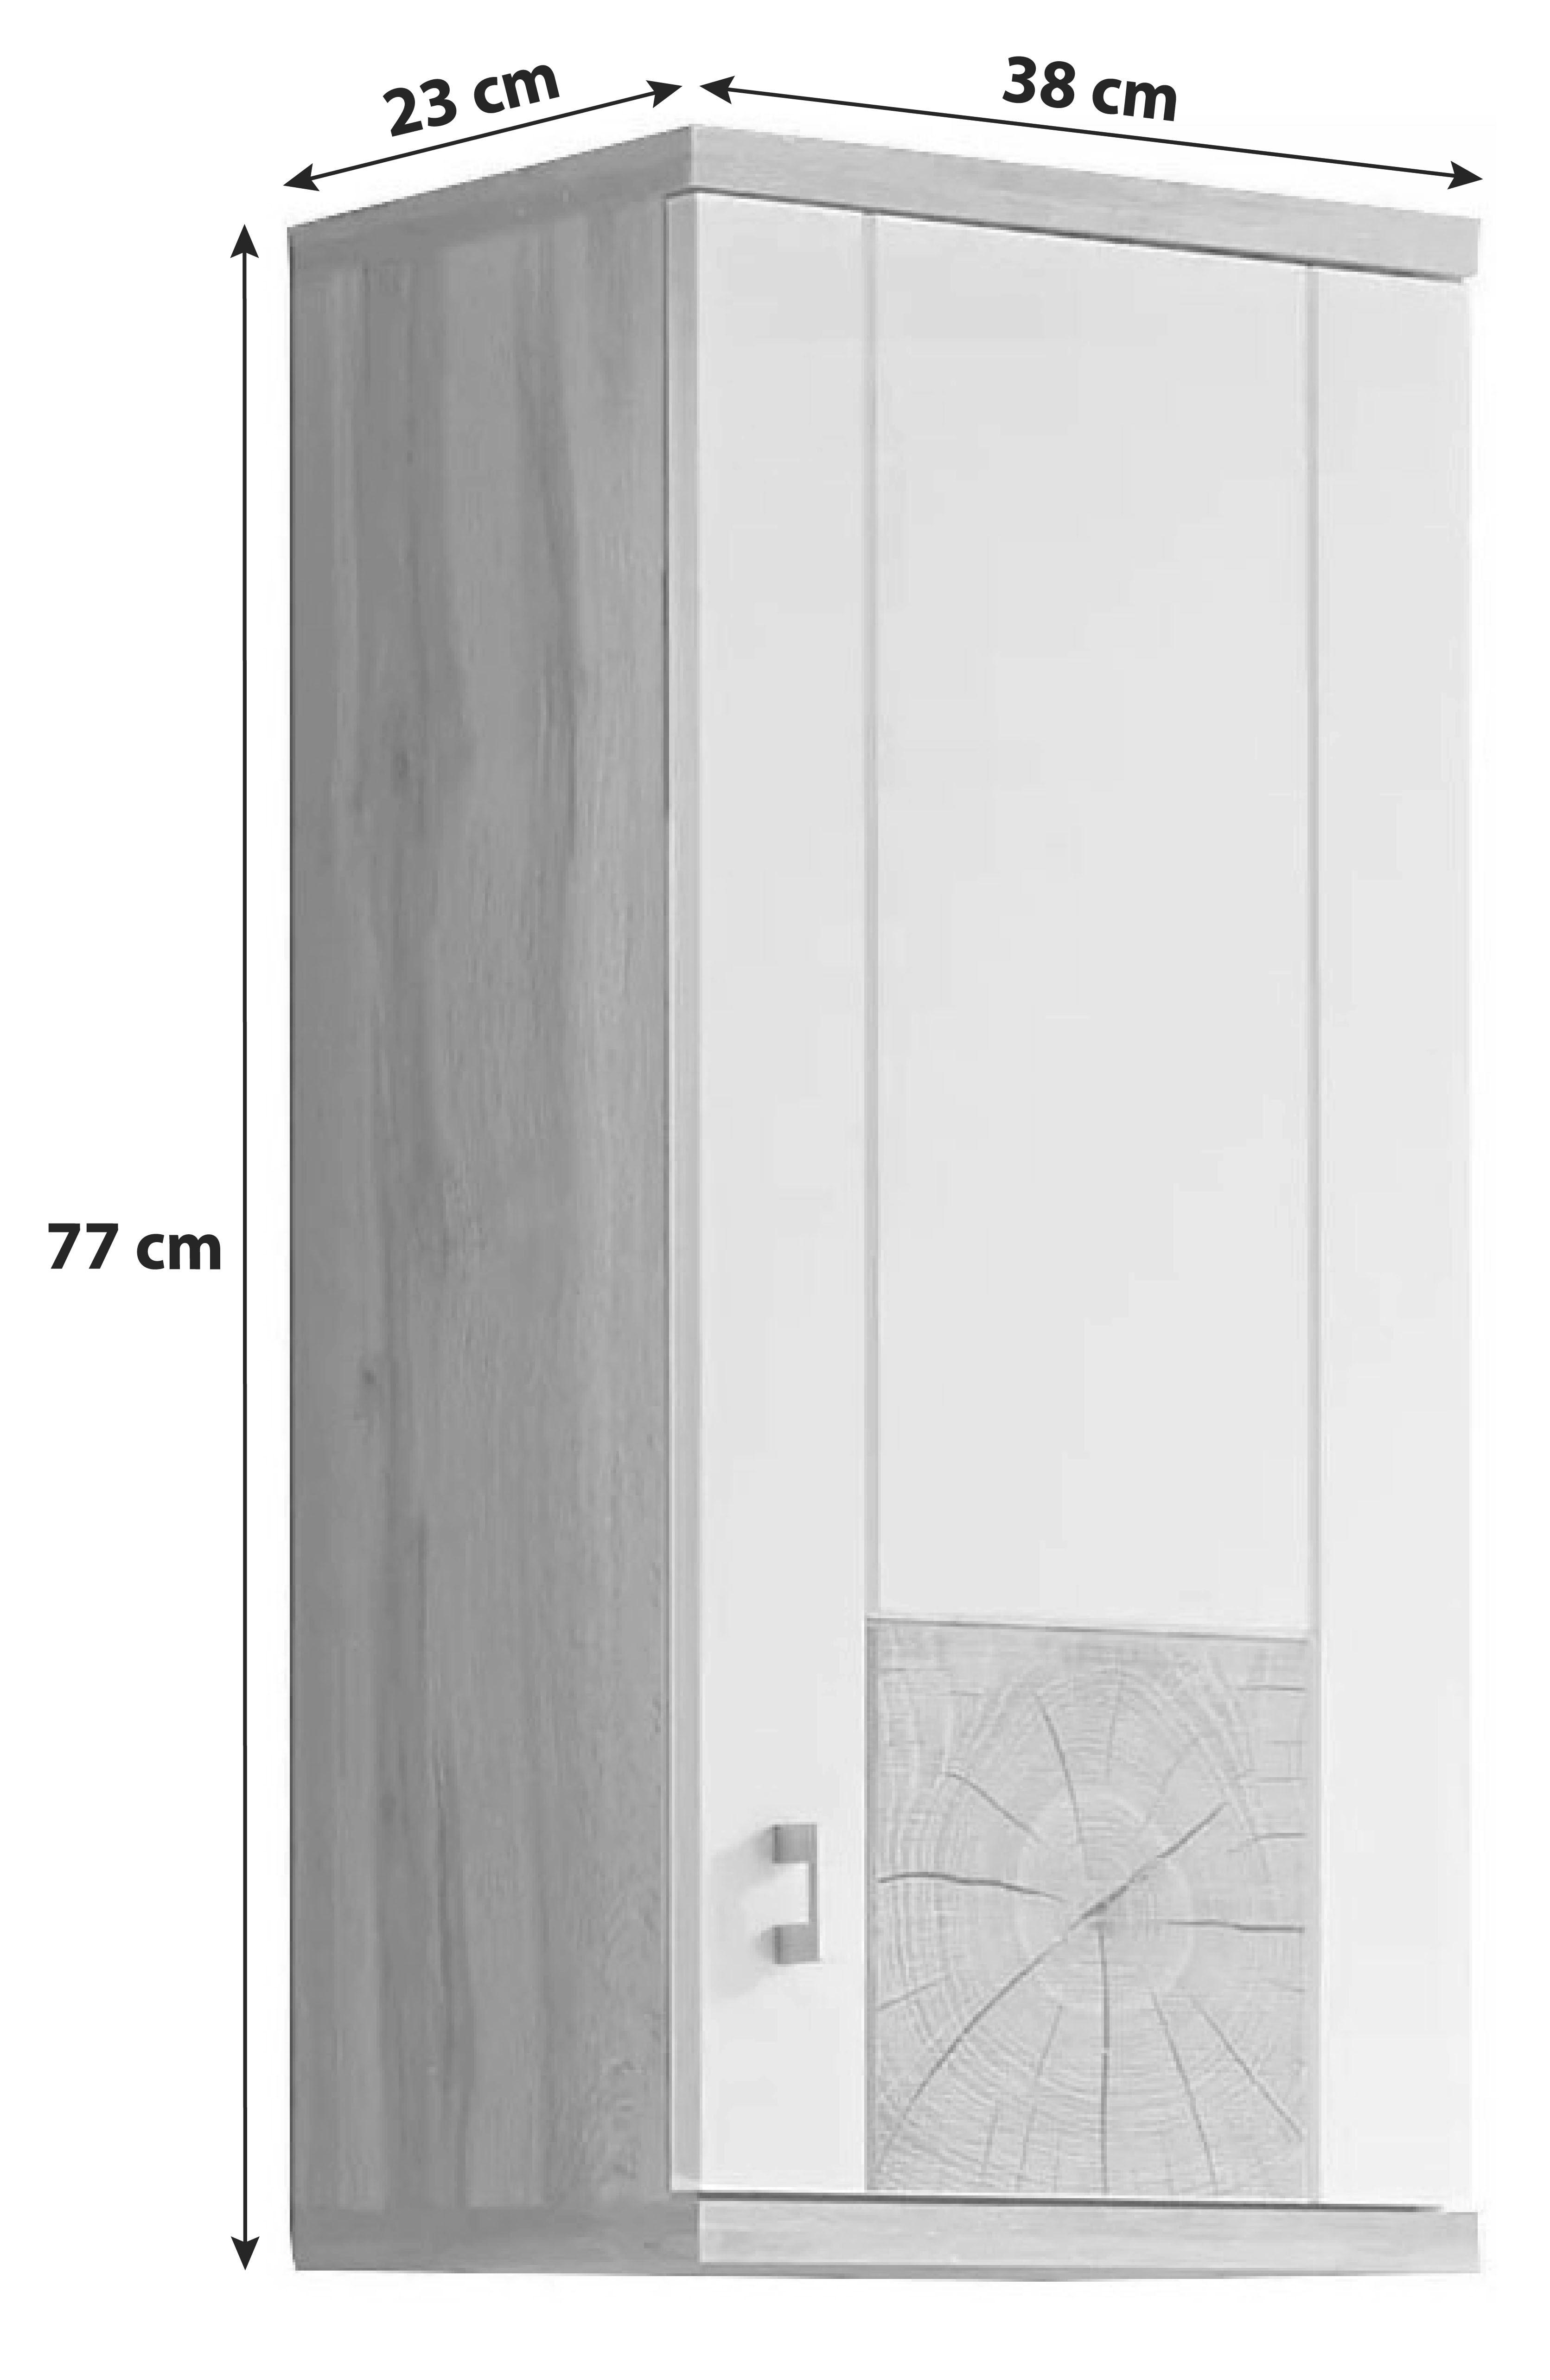 Hängeschrank Spalt B: 38 cm Weiß/Eiche Dekor mit Drehtür - Eichefarben/Weiß, Design, Holzwerkstoff (38/77/23cm) - MID.YOU